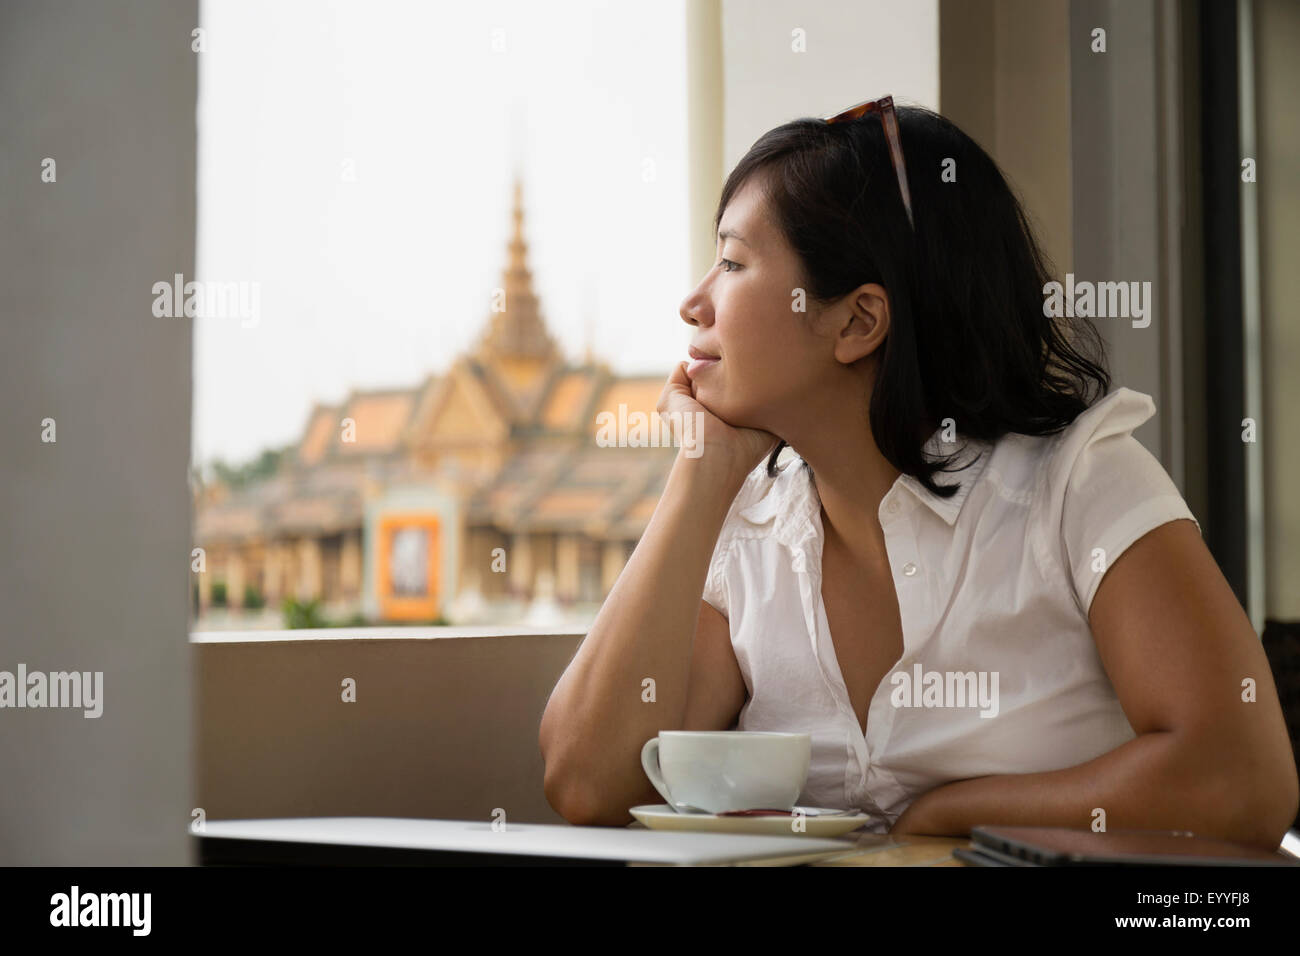 Asiatische Frau schaut aus Café Fenster, Phnom Penh, Kambodscha Stockfoto